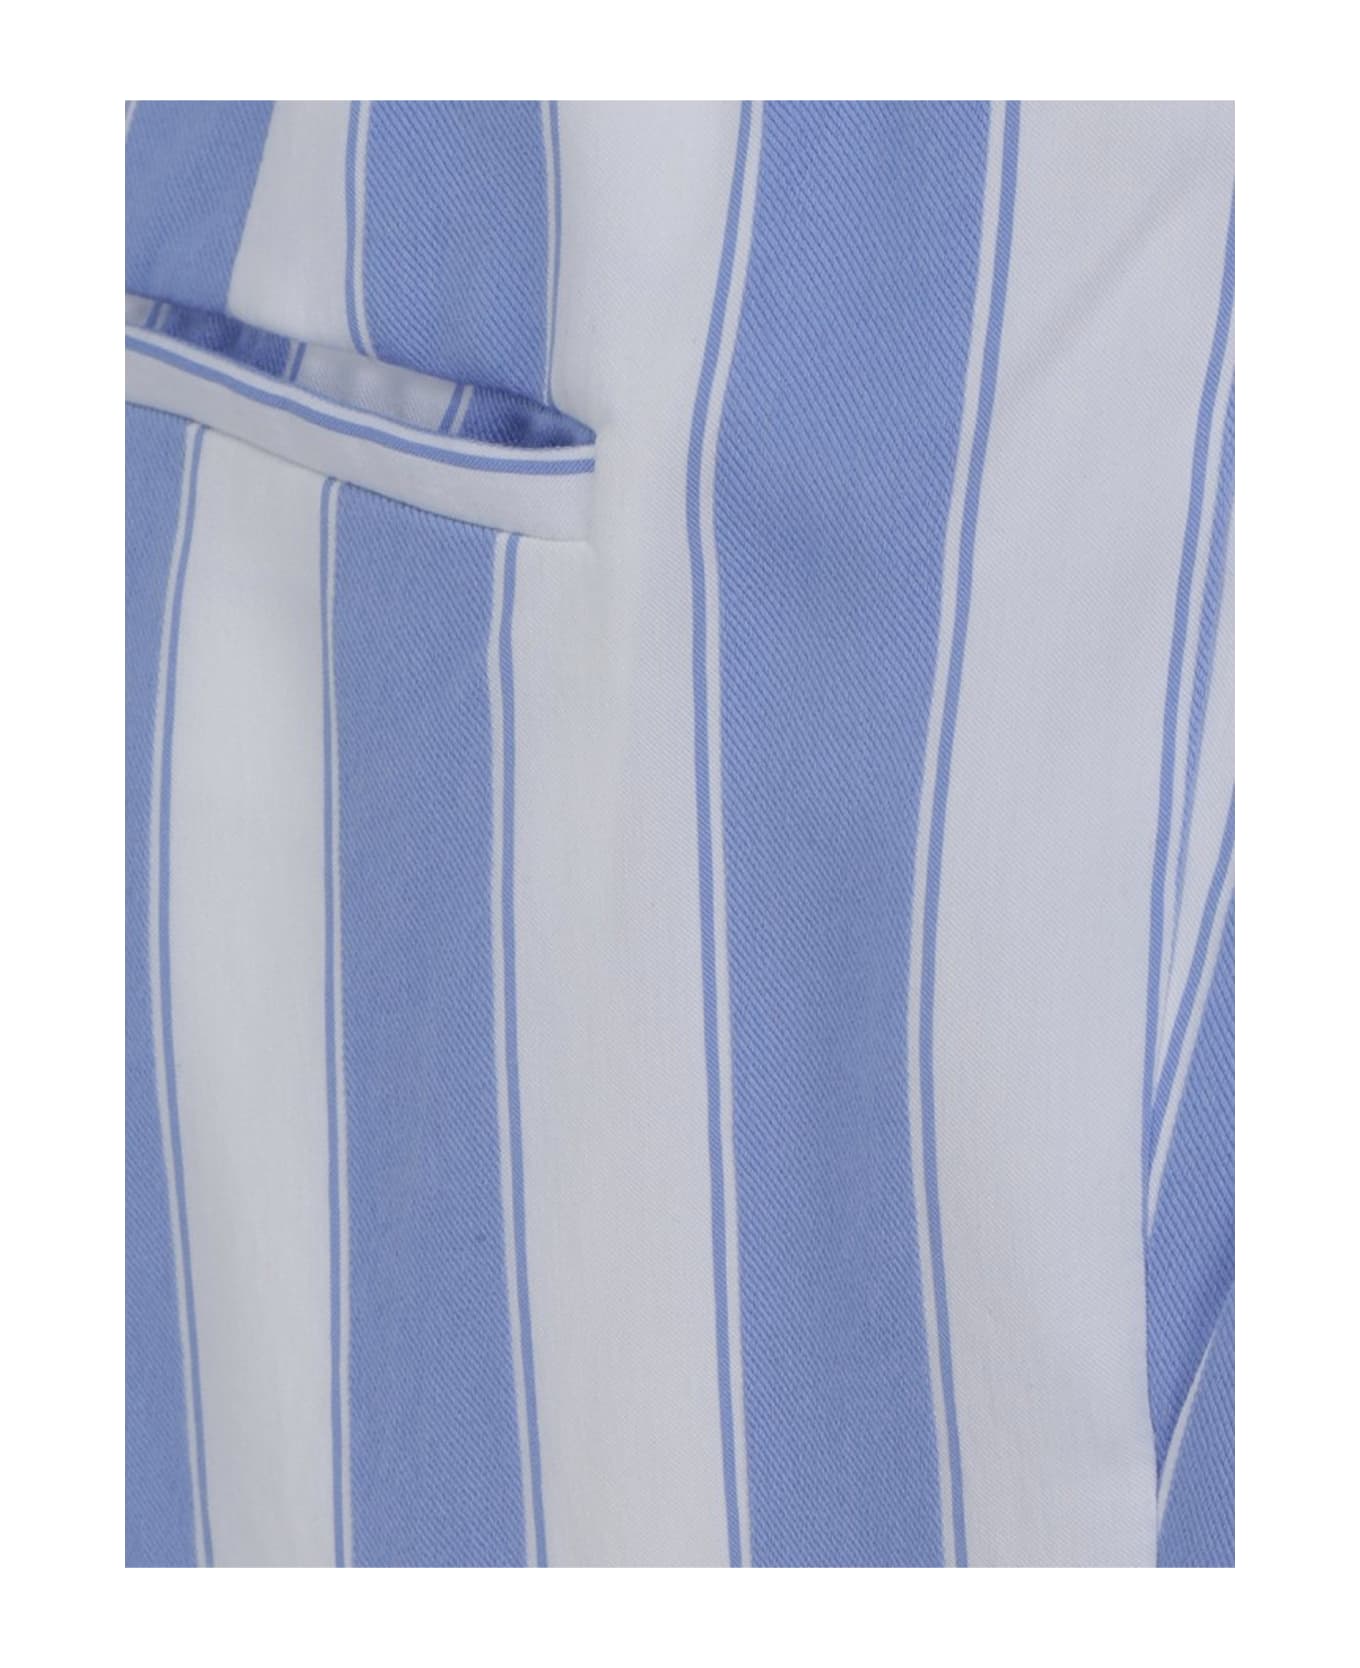 Balmain Striped Pants - Blue ボトムス